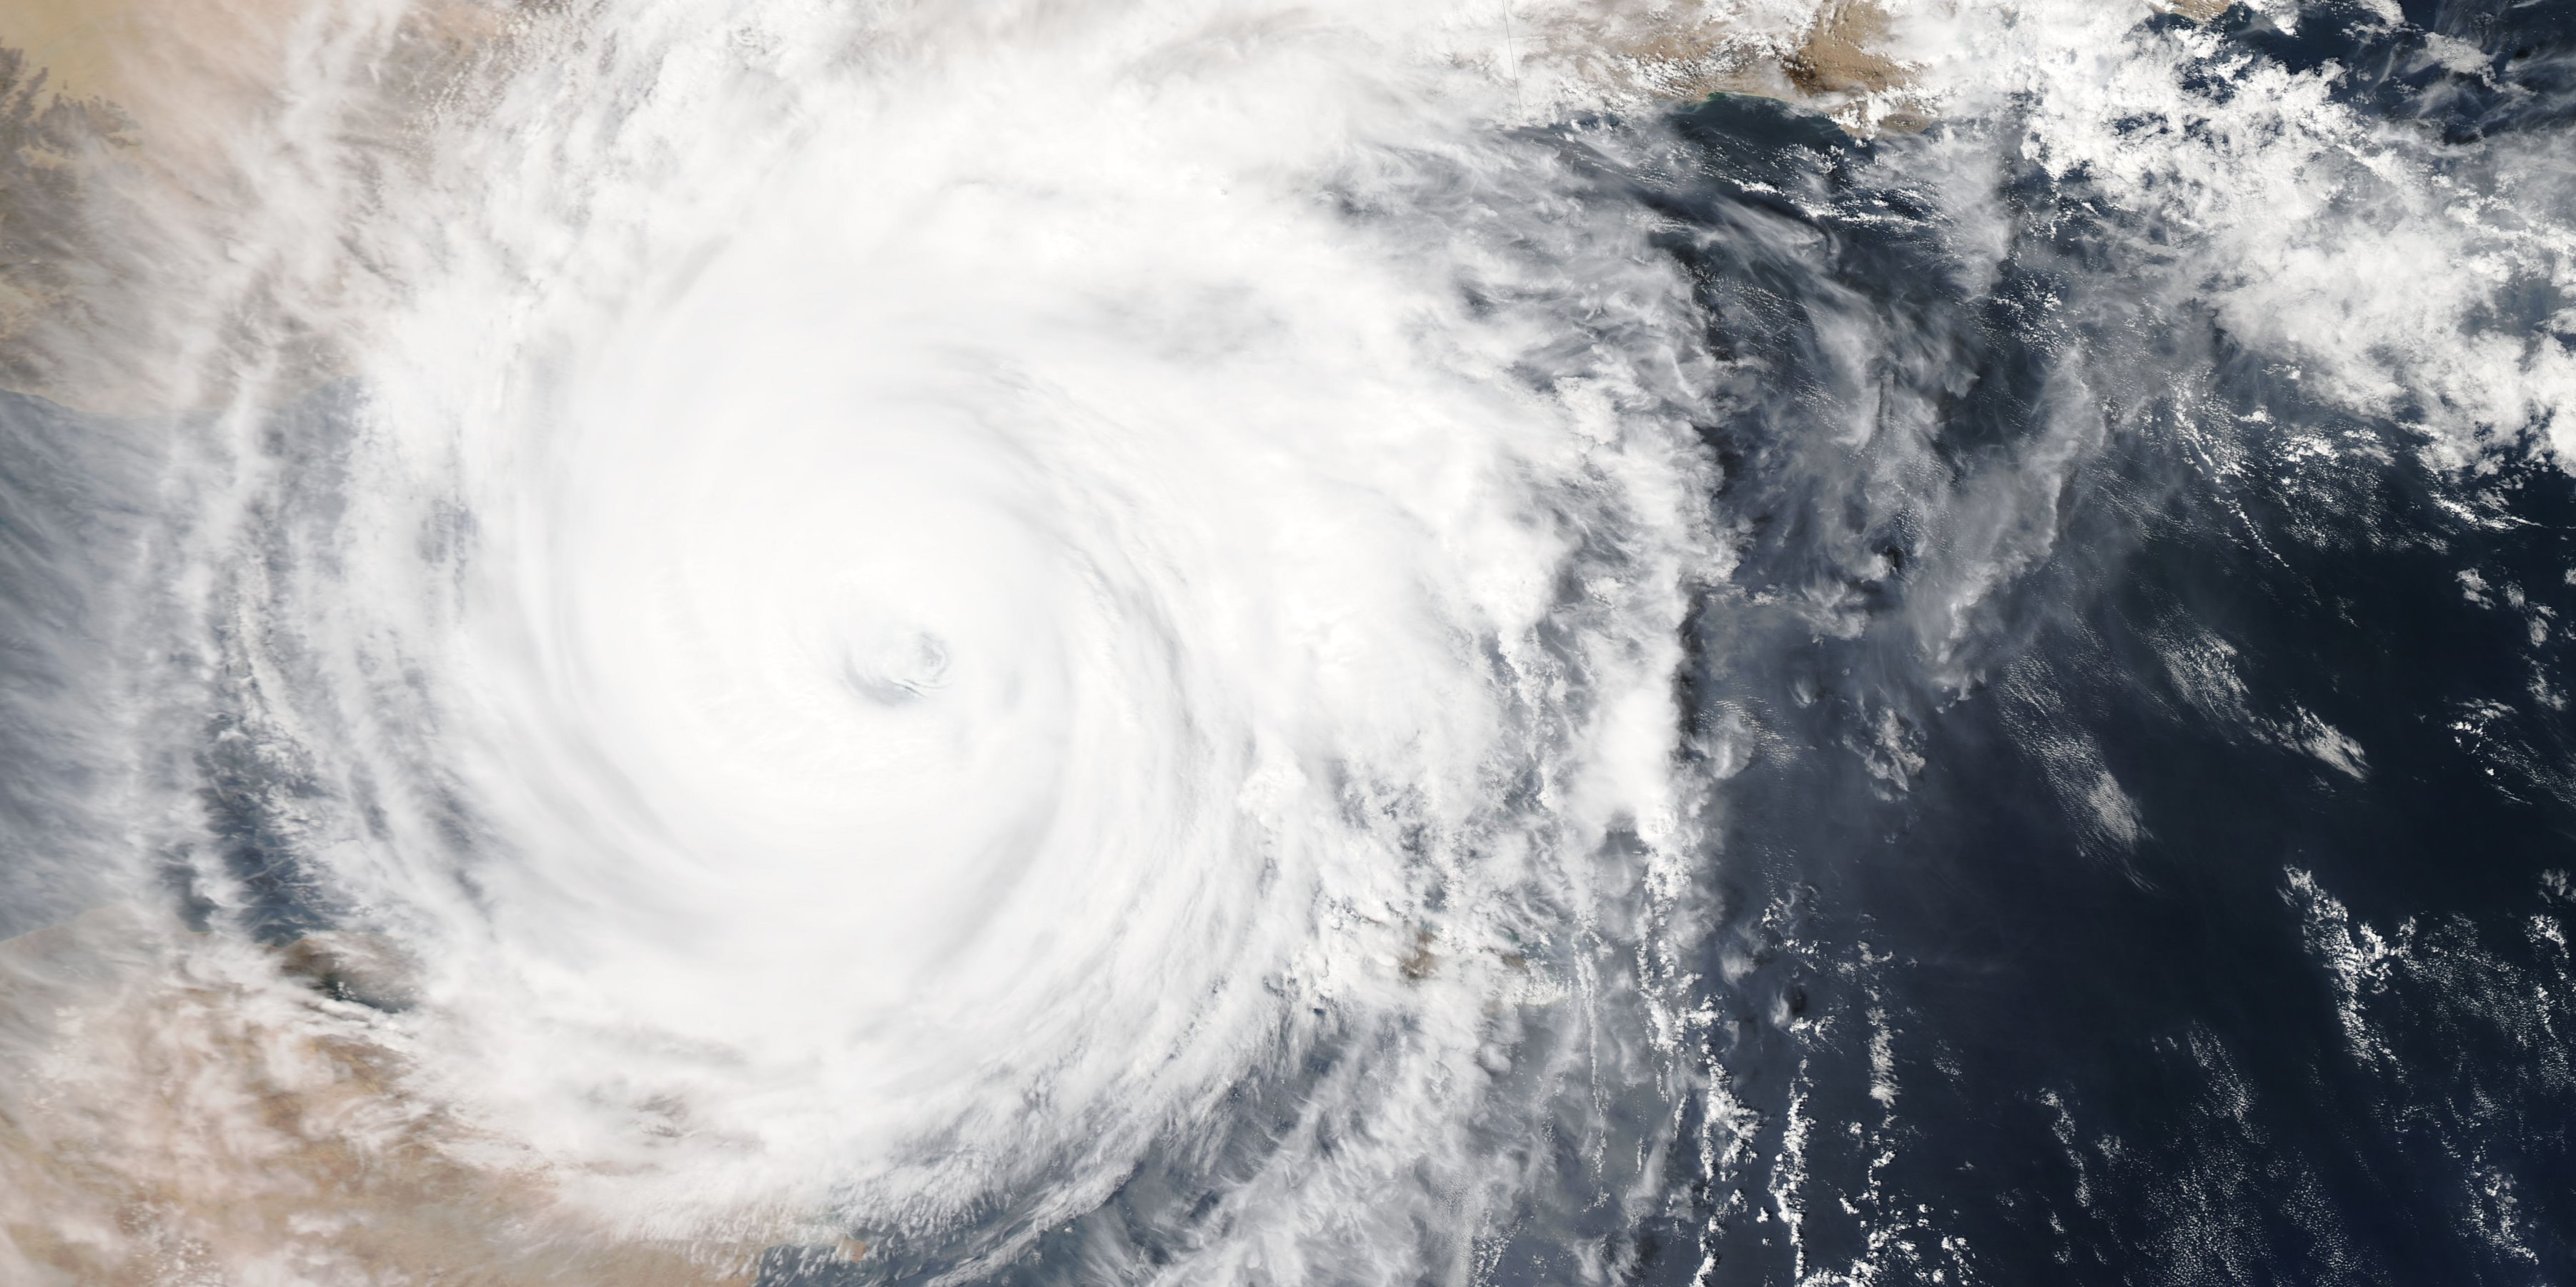 Cicloni tropicali: conoscerli migliora le previsioni nel Maritime Continent